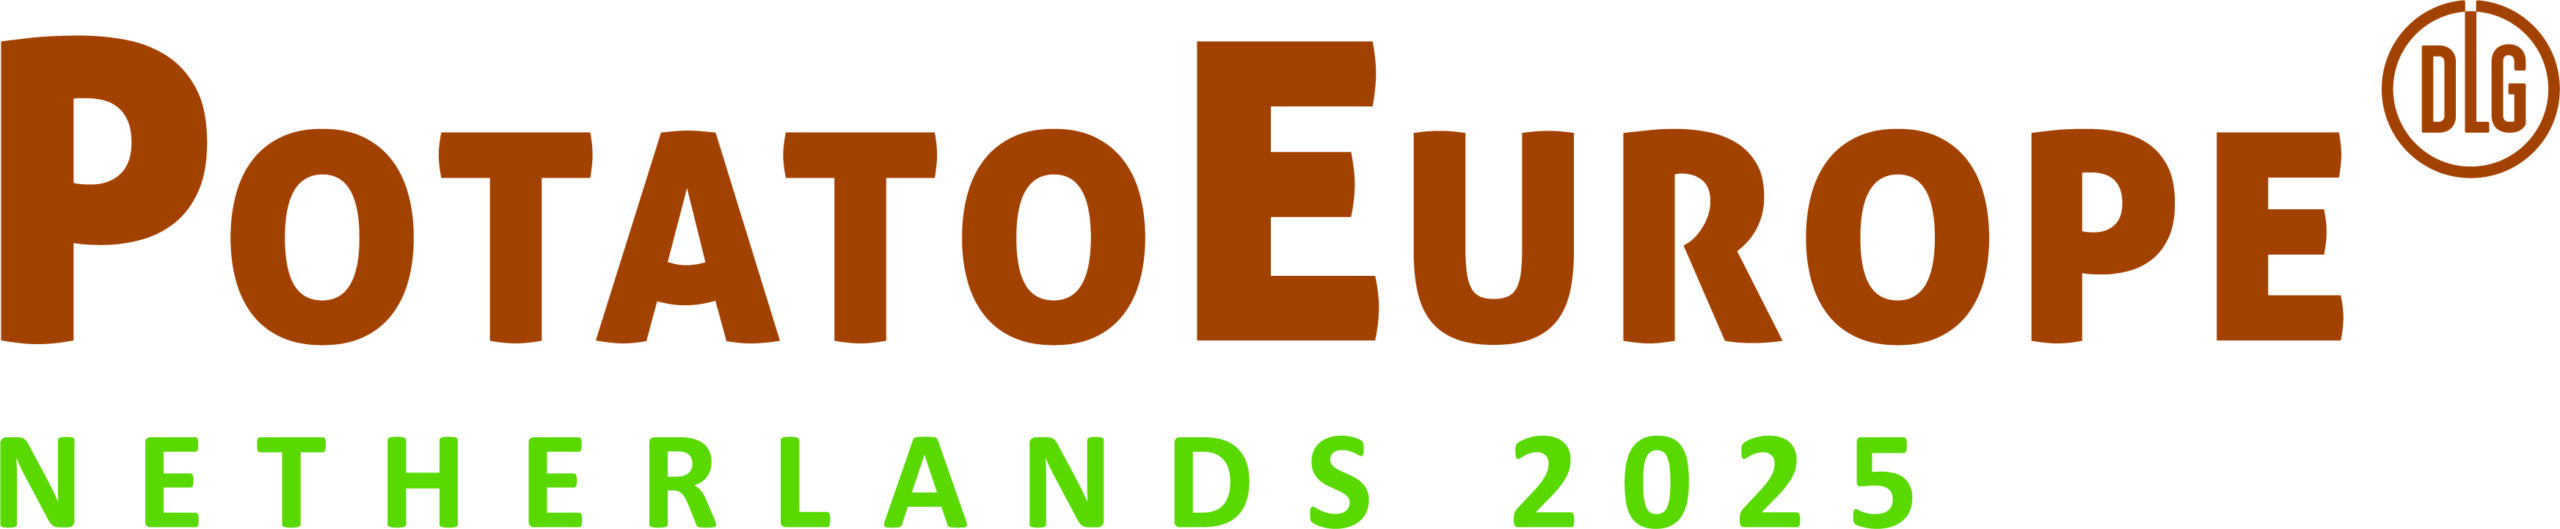 event: PotatoEurope 2025